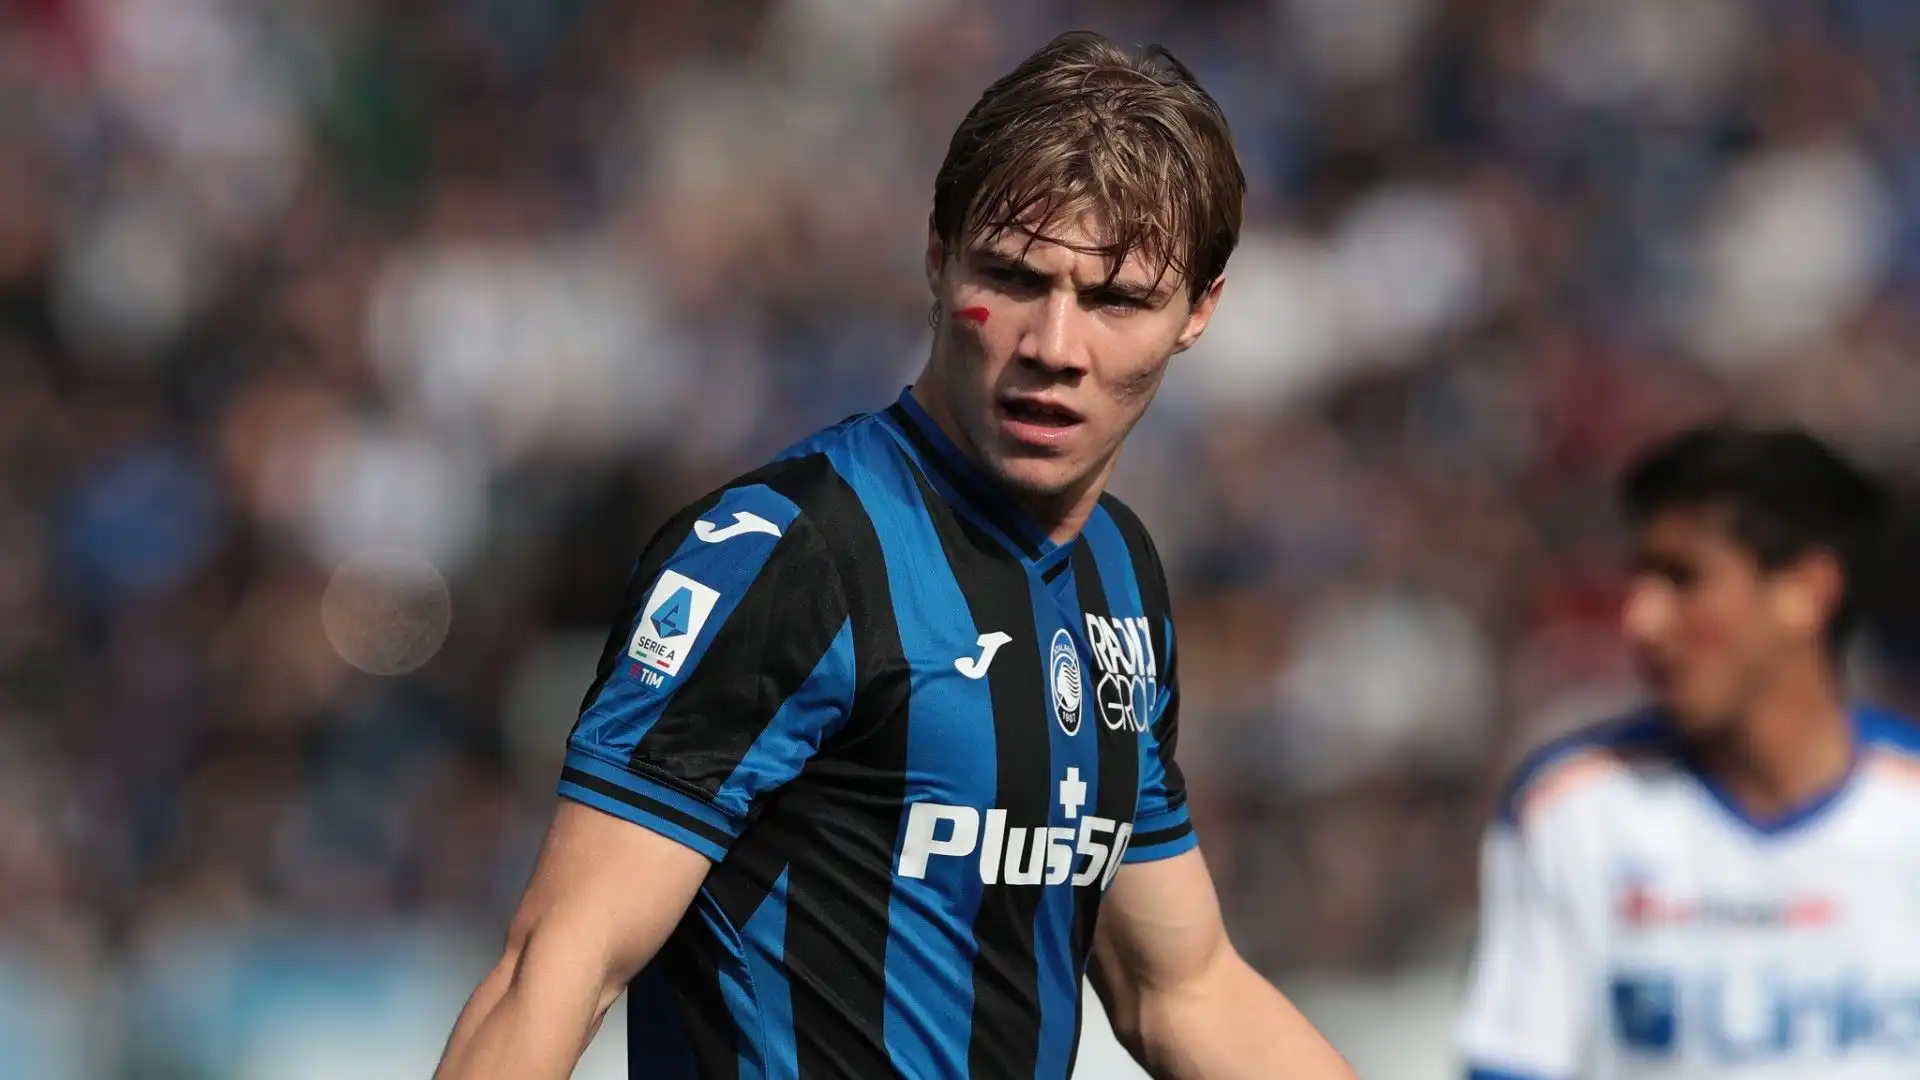 L'Atalanta nell'estate 2022 ha pagato circa 17 milioni di euro  allo Sturm Gaz per acquistare Rasmus Hojlund